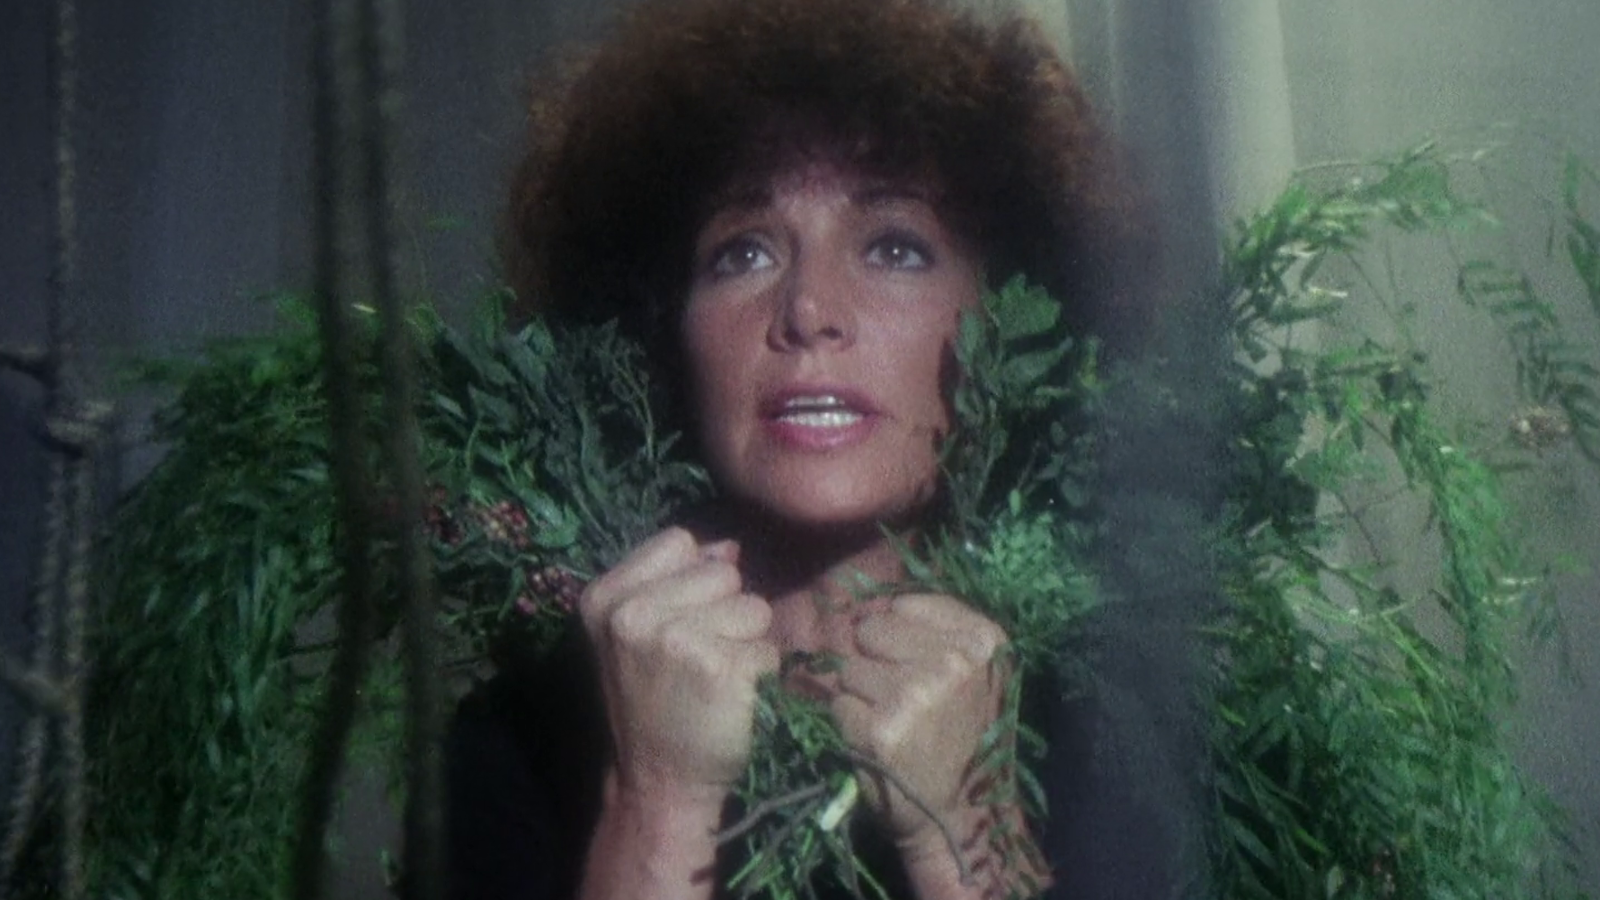 Kuvassa on naisen kasvot ja katse ylöspäin.  Hänellä on ruskeat pörröiset hiukset ja kädessä on vihreitä kasveja.